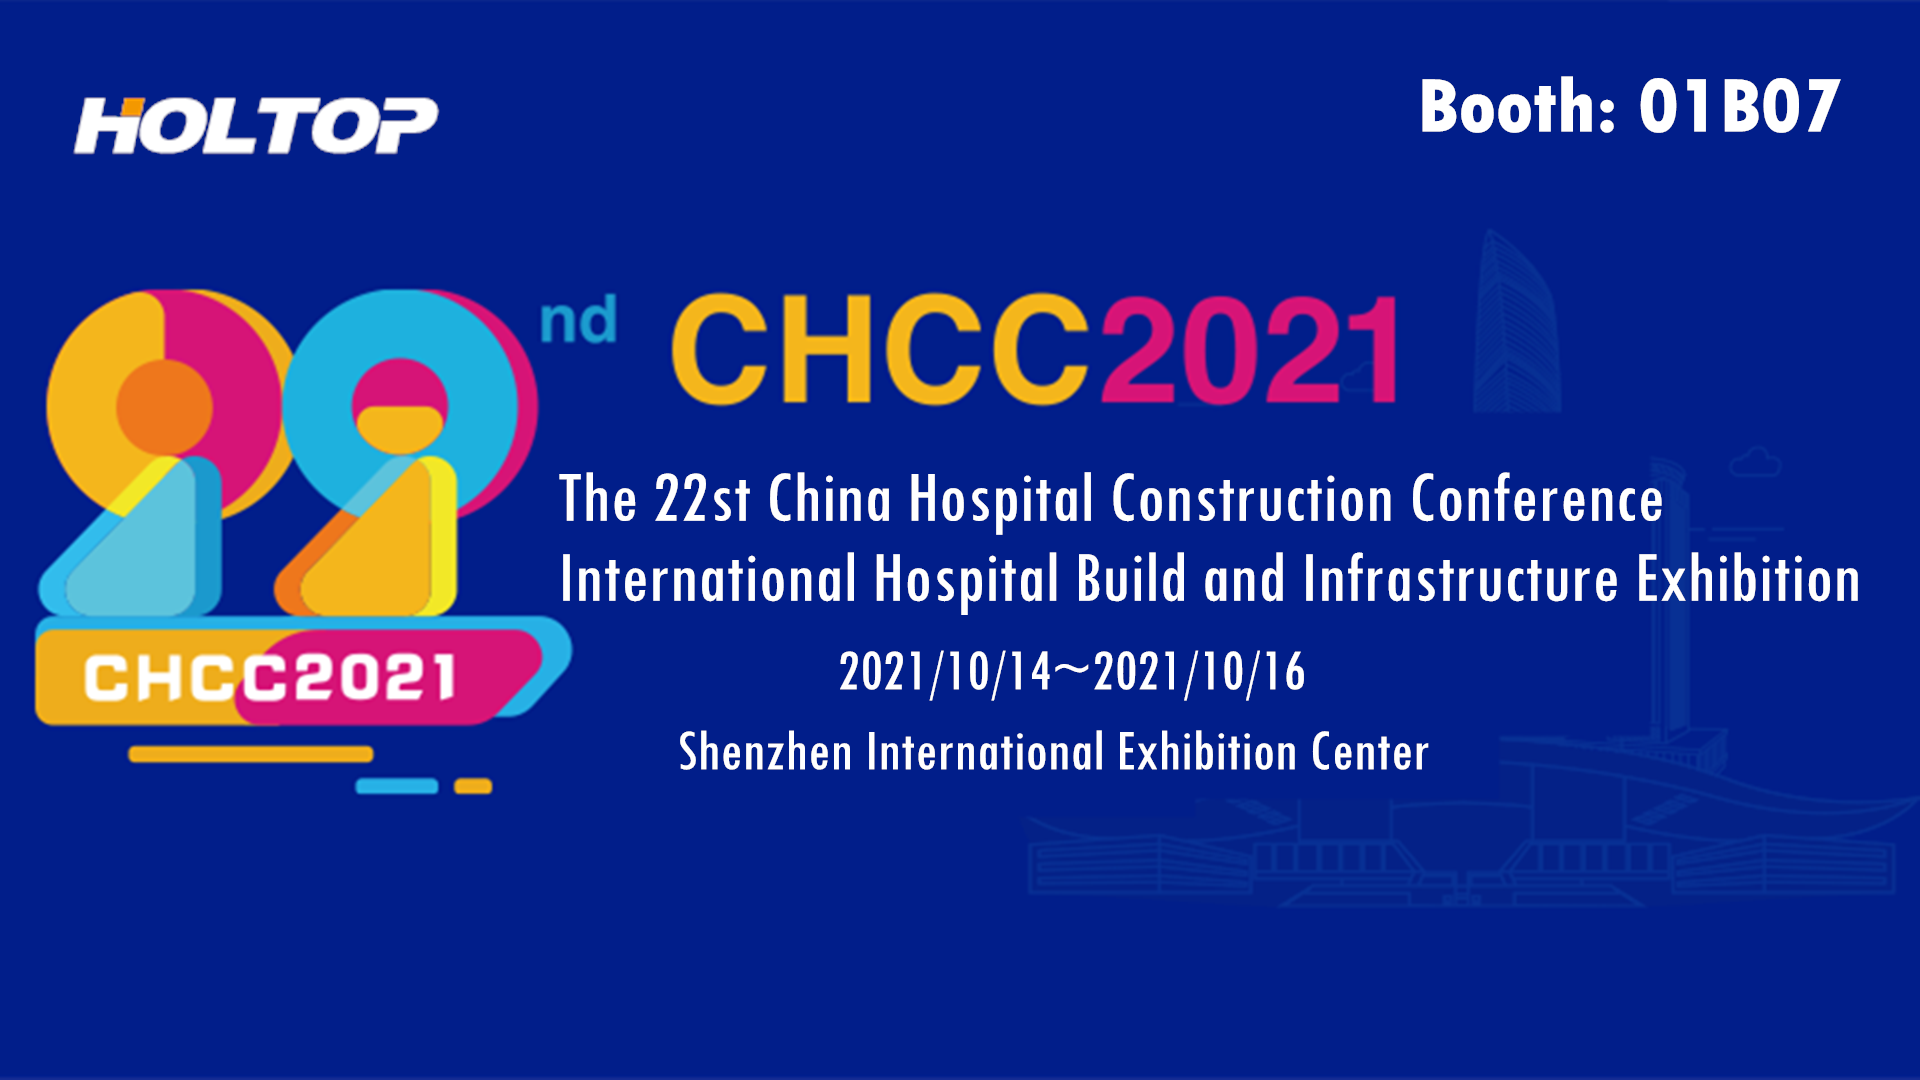 CHCC 2021